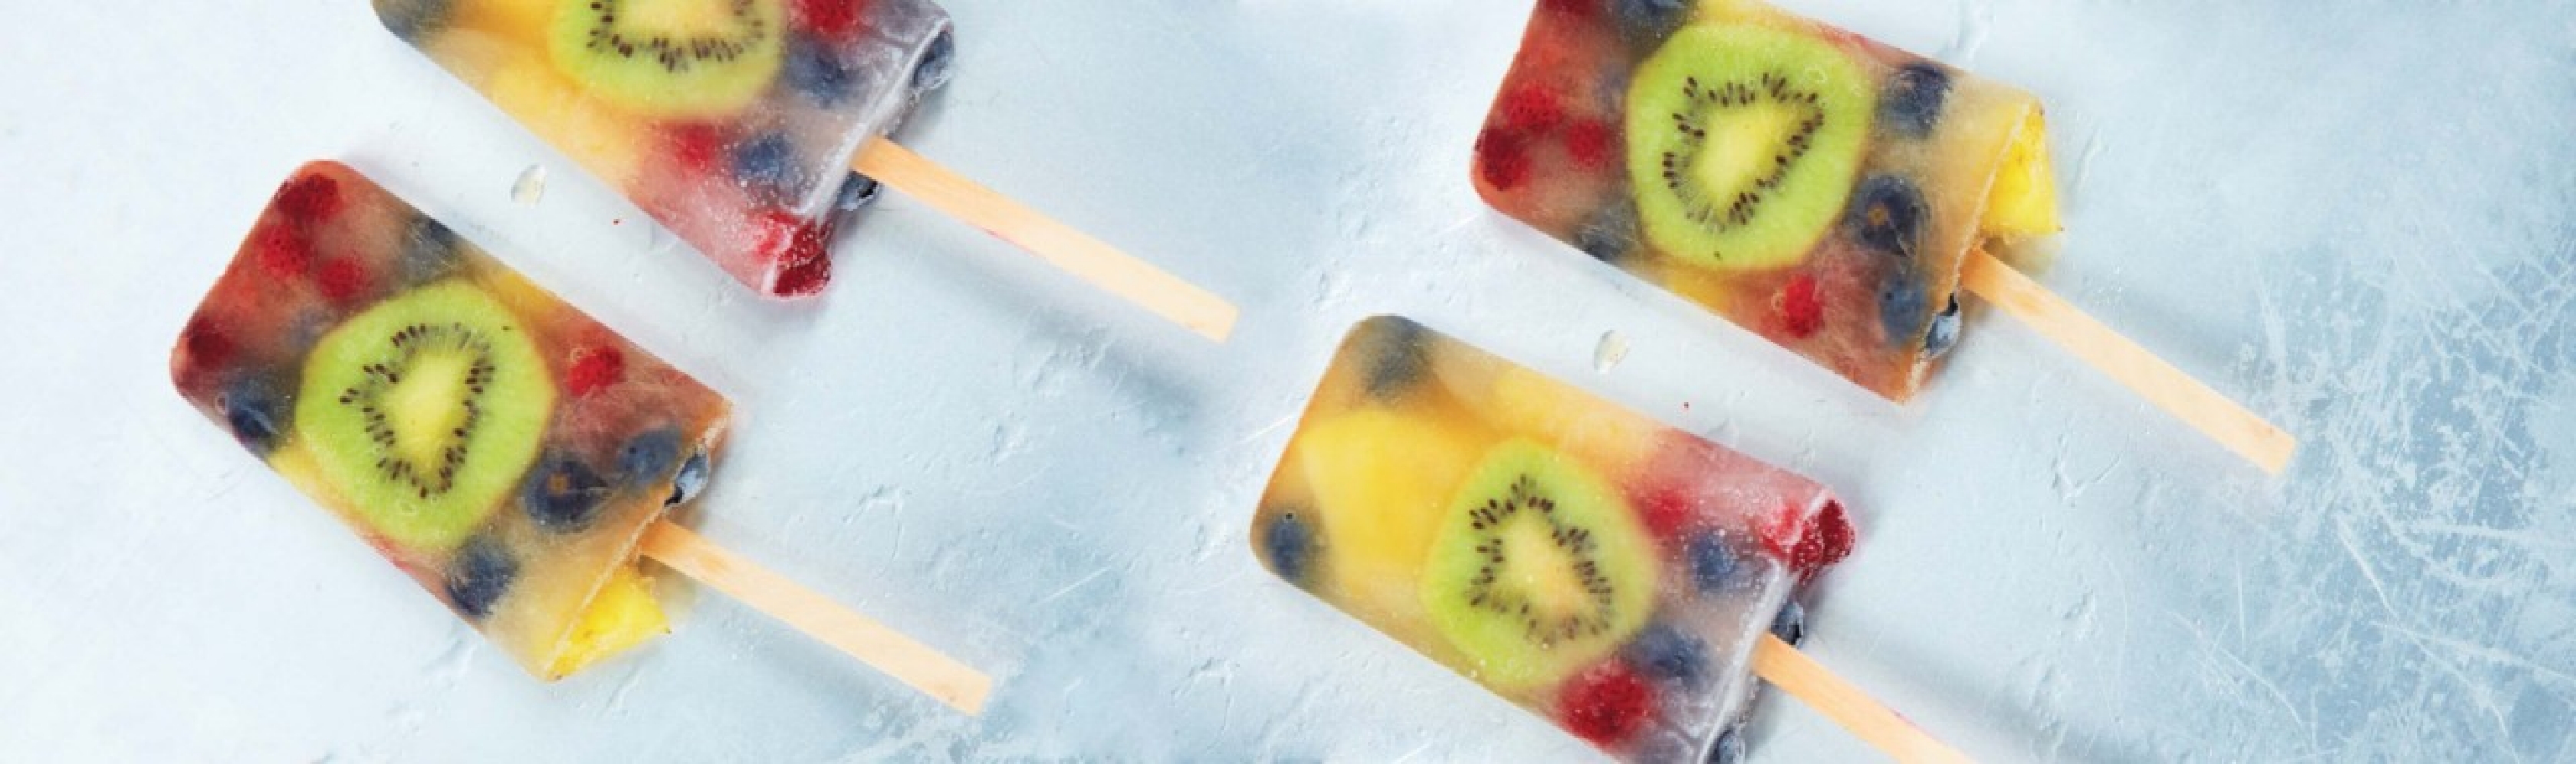 Bâtonnets glacés avec des morceaux de fruits